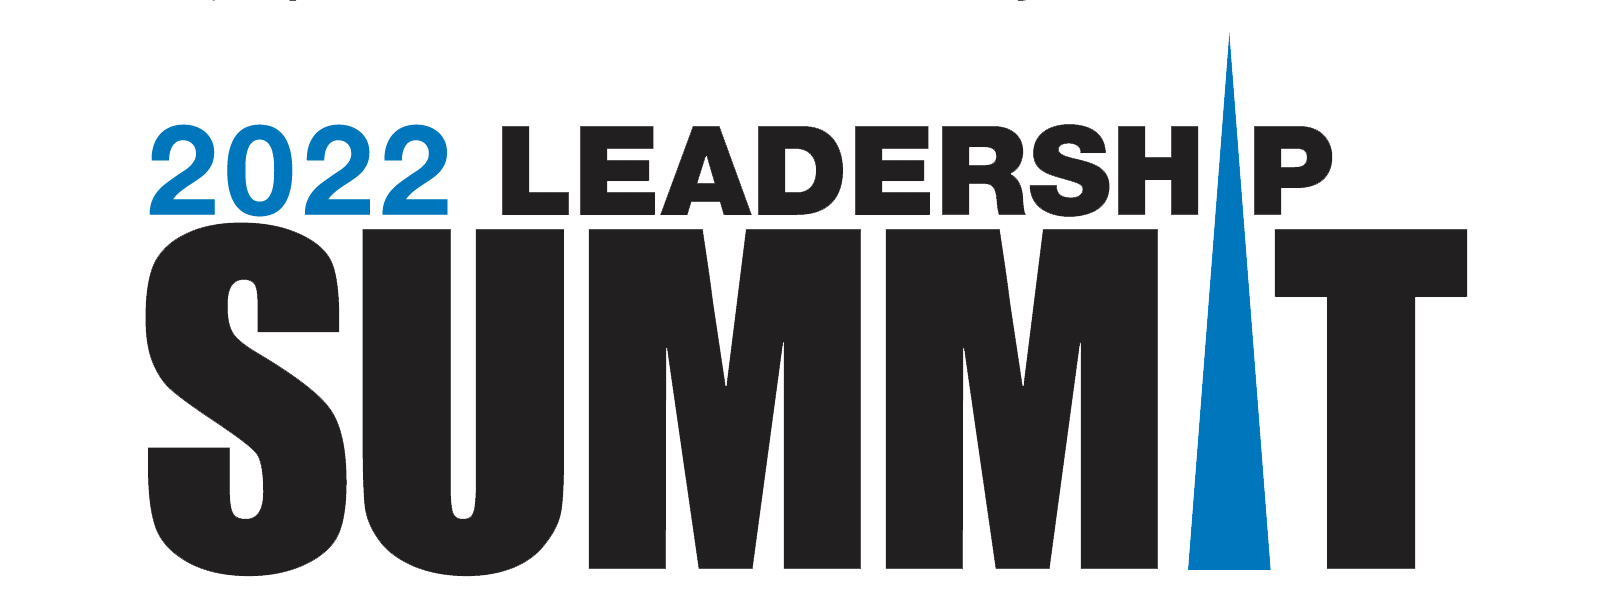 Leadership Summit logo